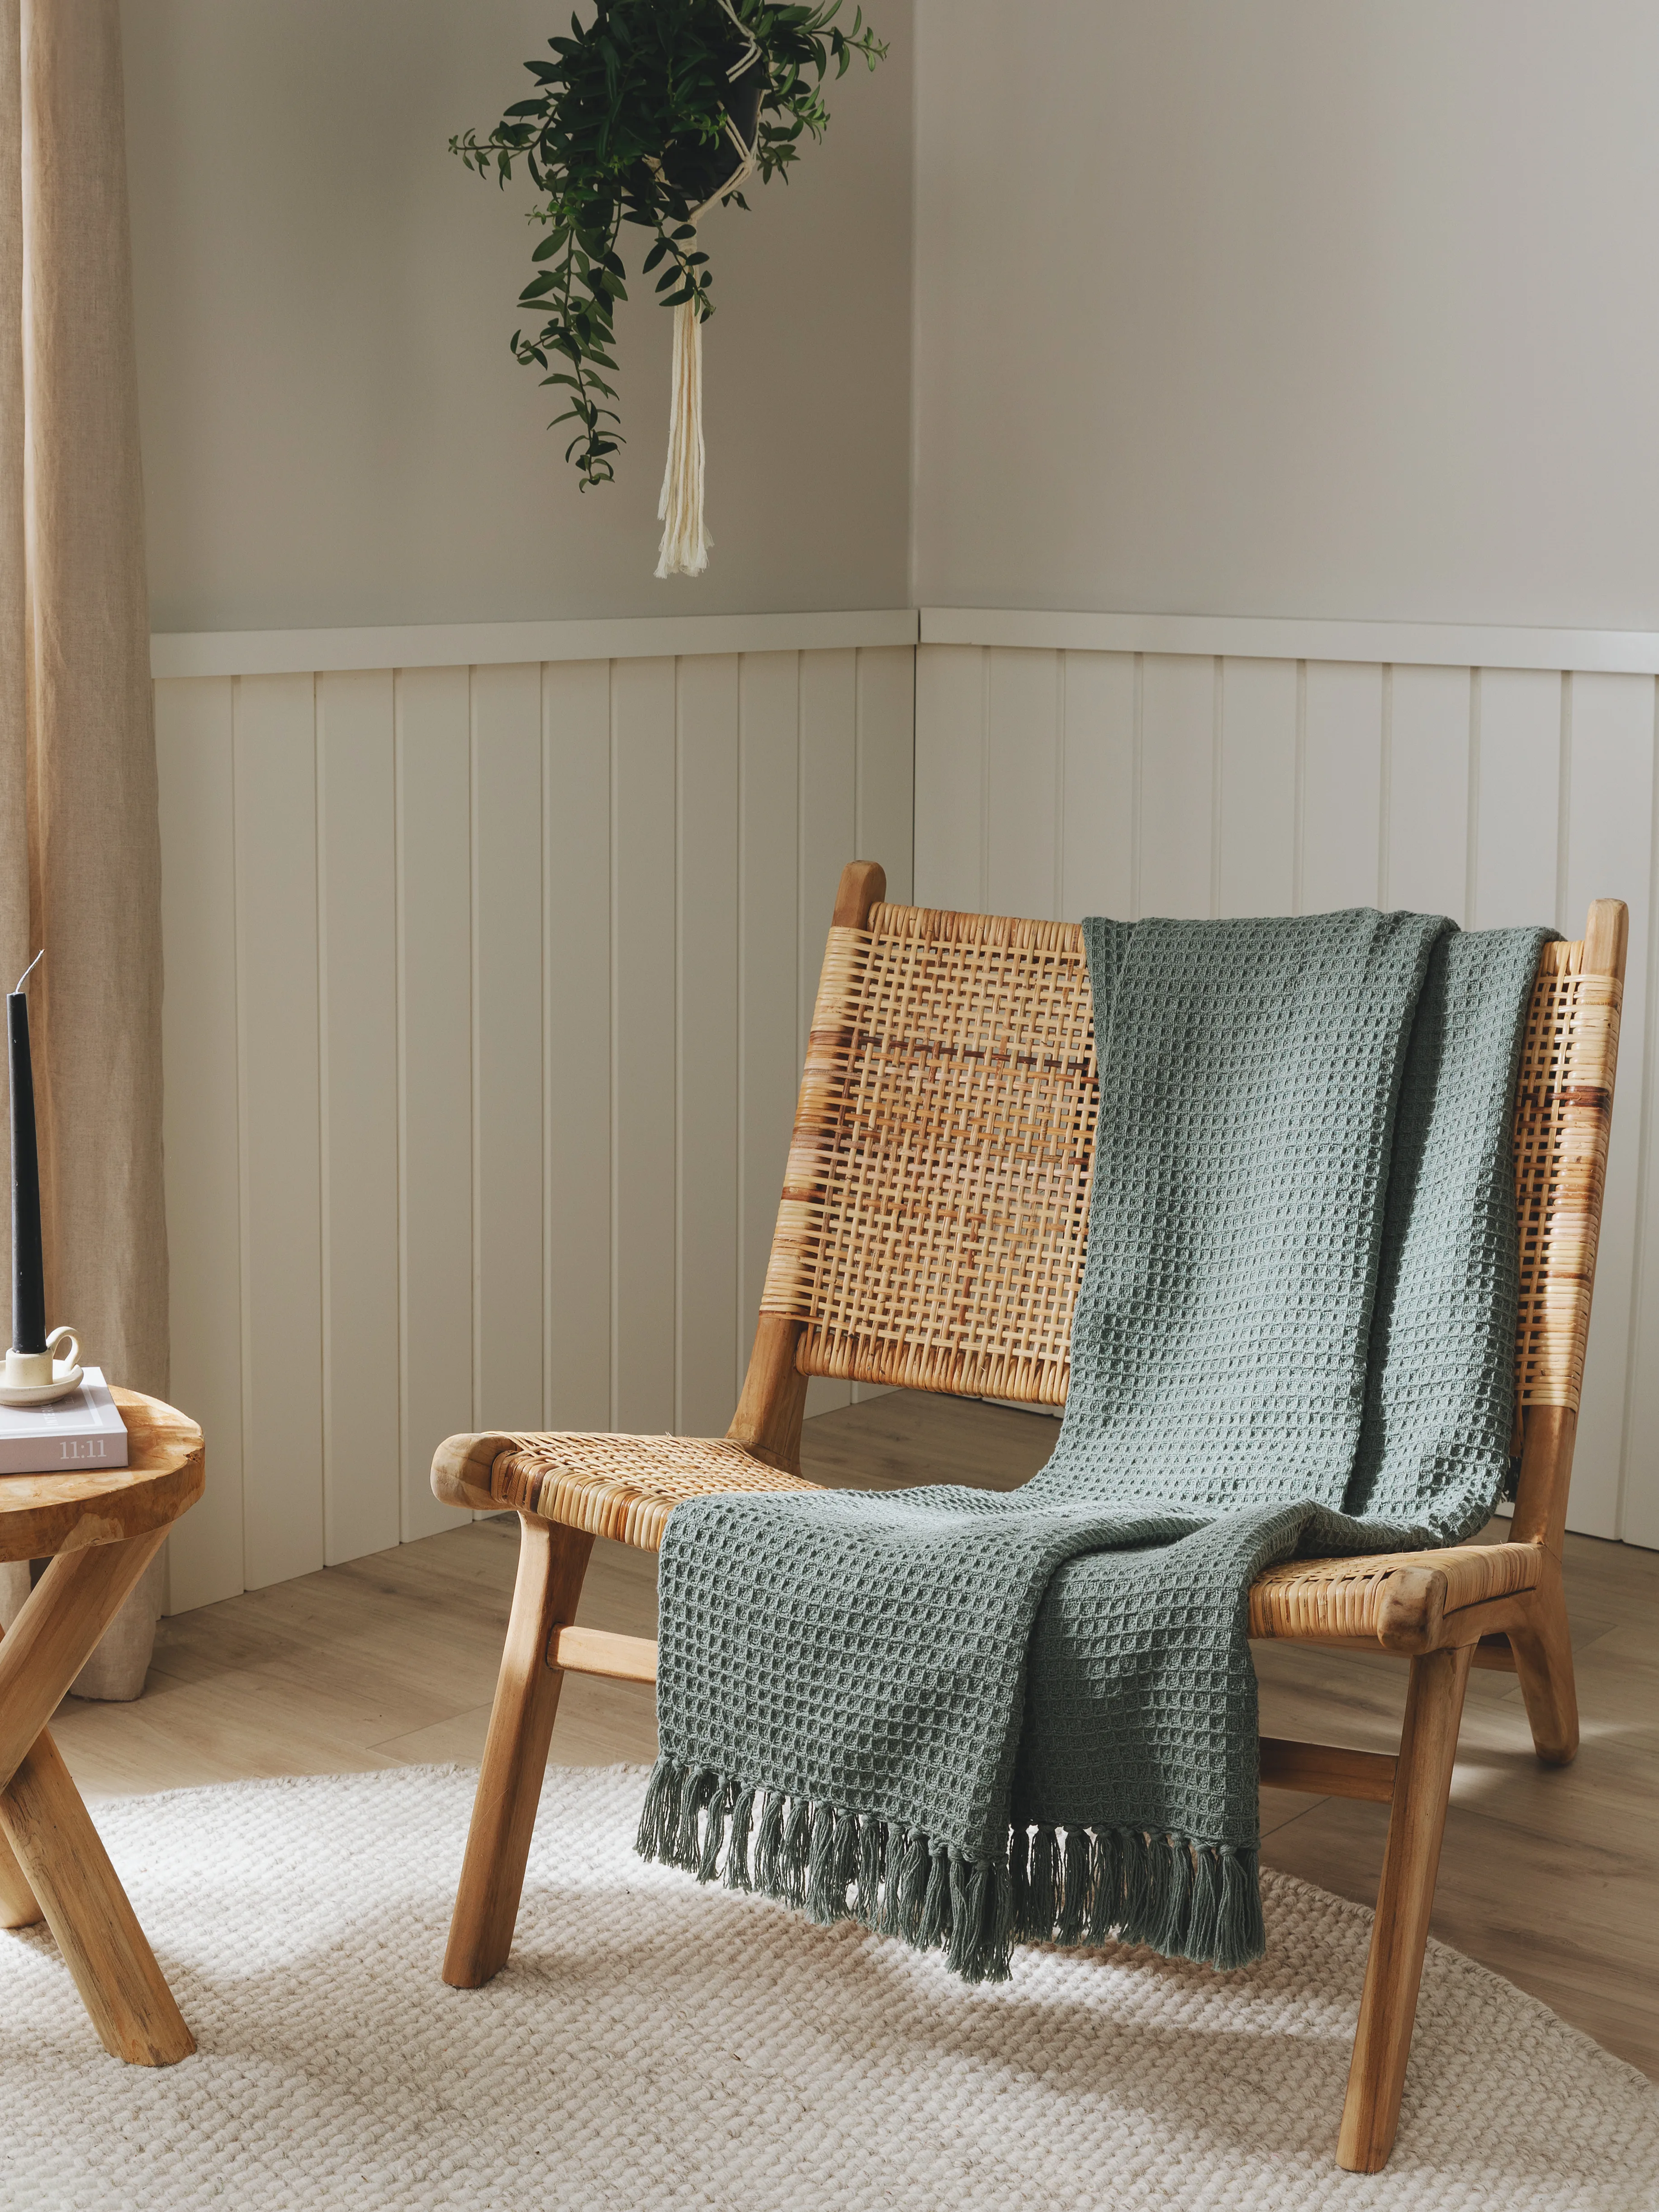 Gemütlich eingerichtete Sitzecke im Gästezimmer mit Rattansessel, mintgrüner Decke und Hängepflanze